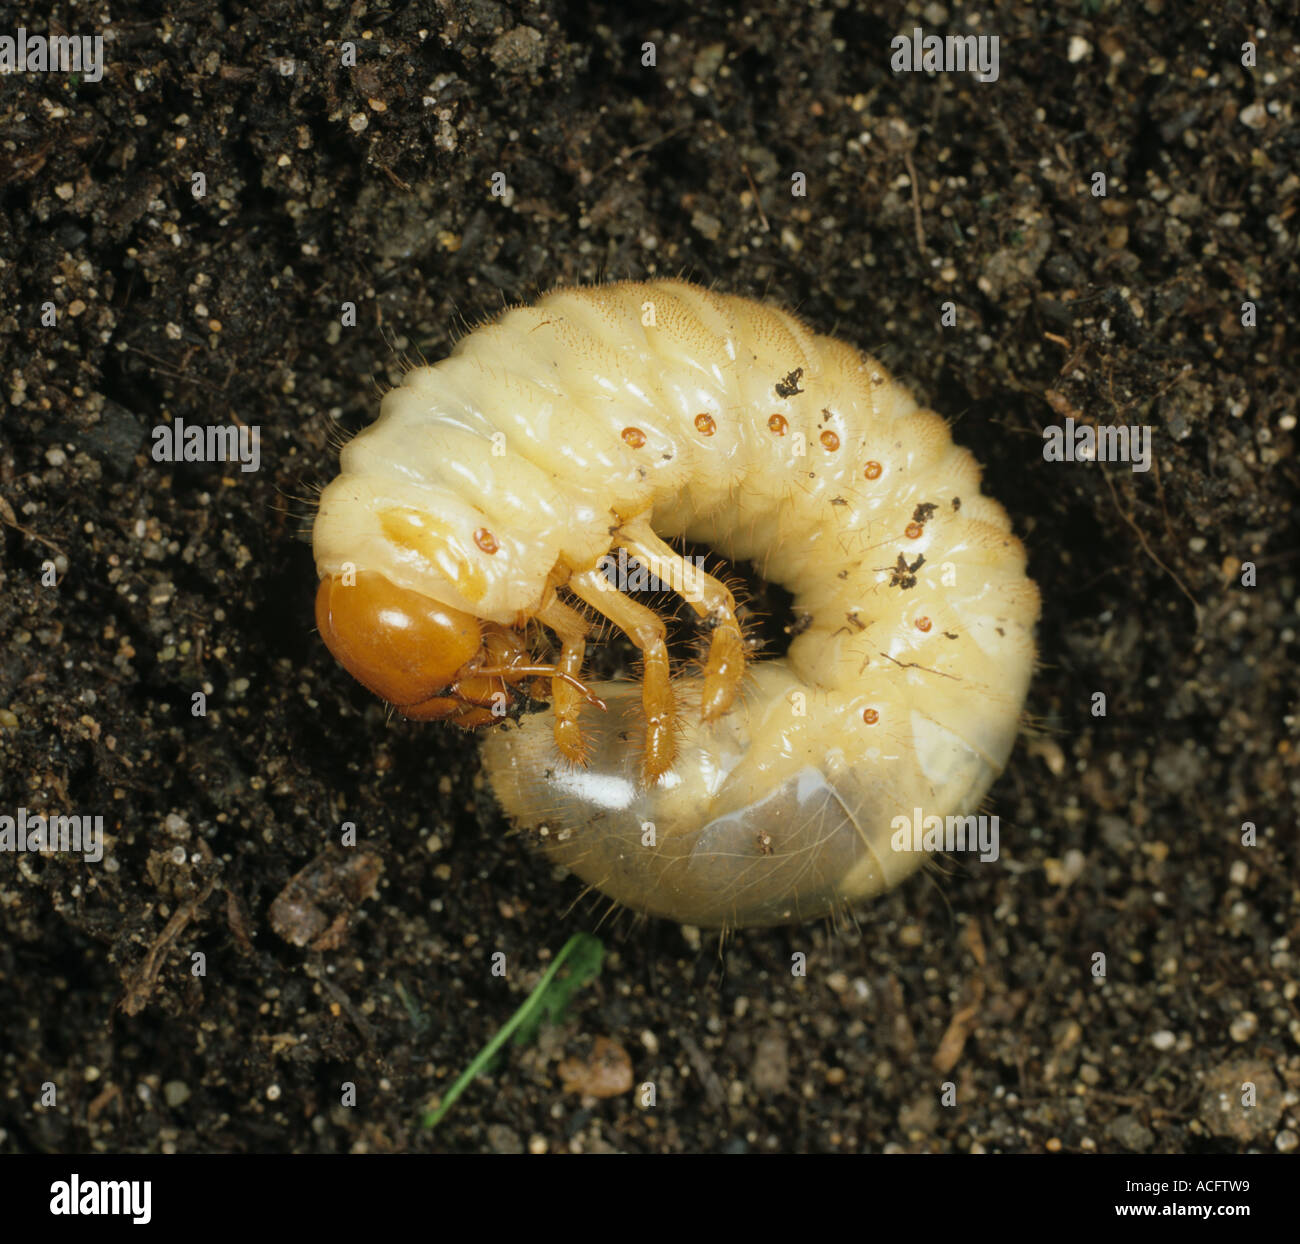 Unione cockchafer Melolontha melolontha Larva grub sul suolo Foto Stock